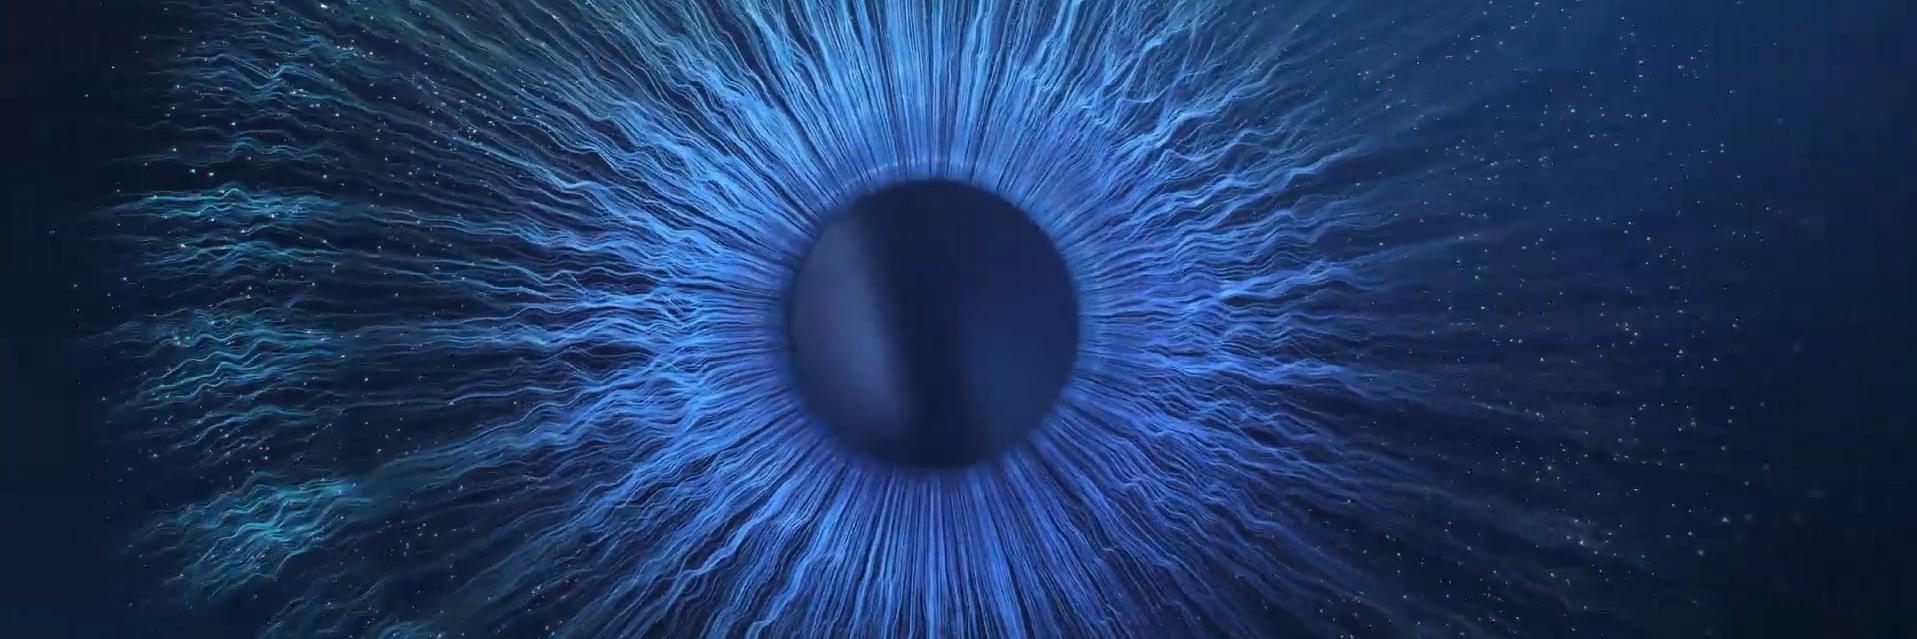 Daag de grenzen van de verbeelding uit - een close-up van een blauwe oogbol in het donker.